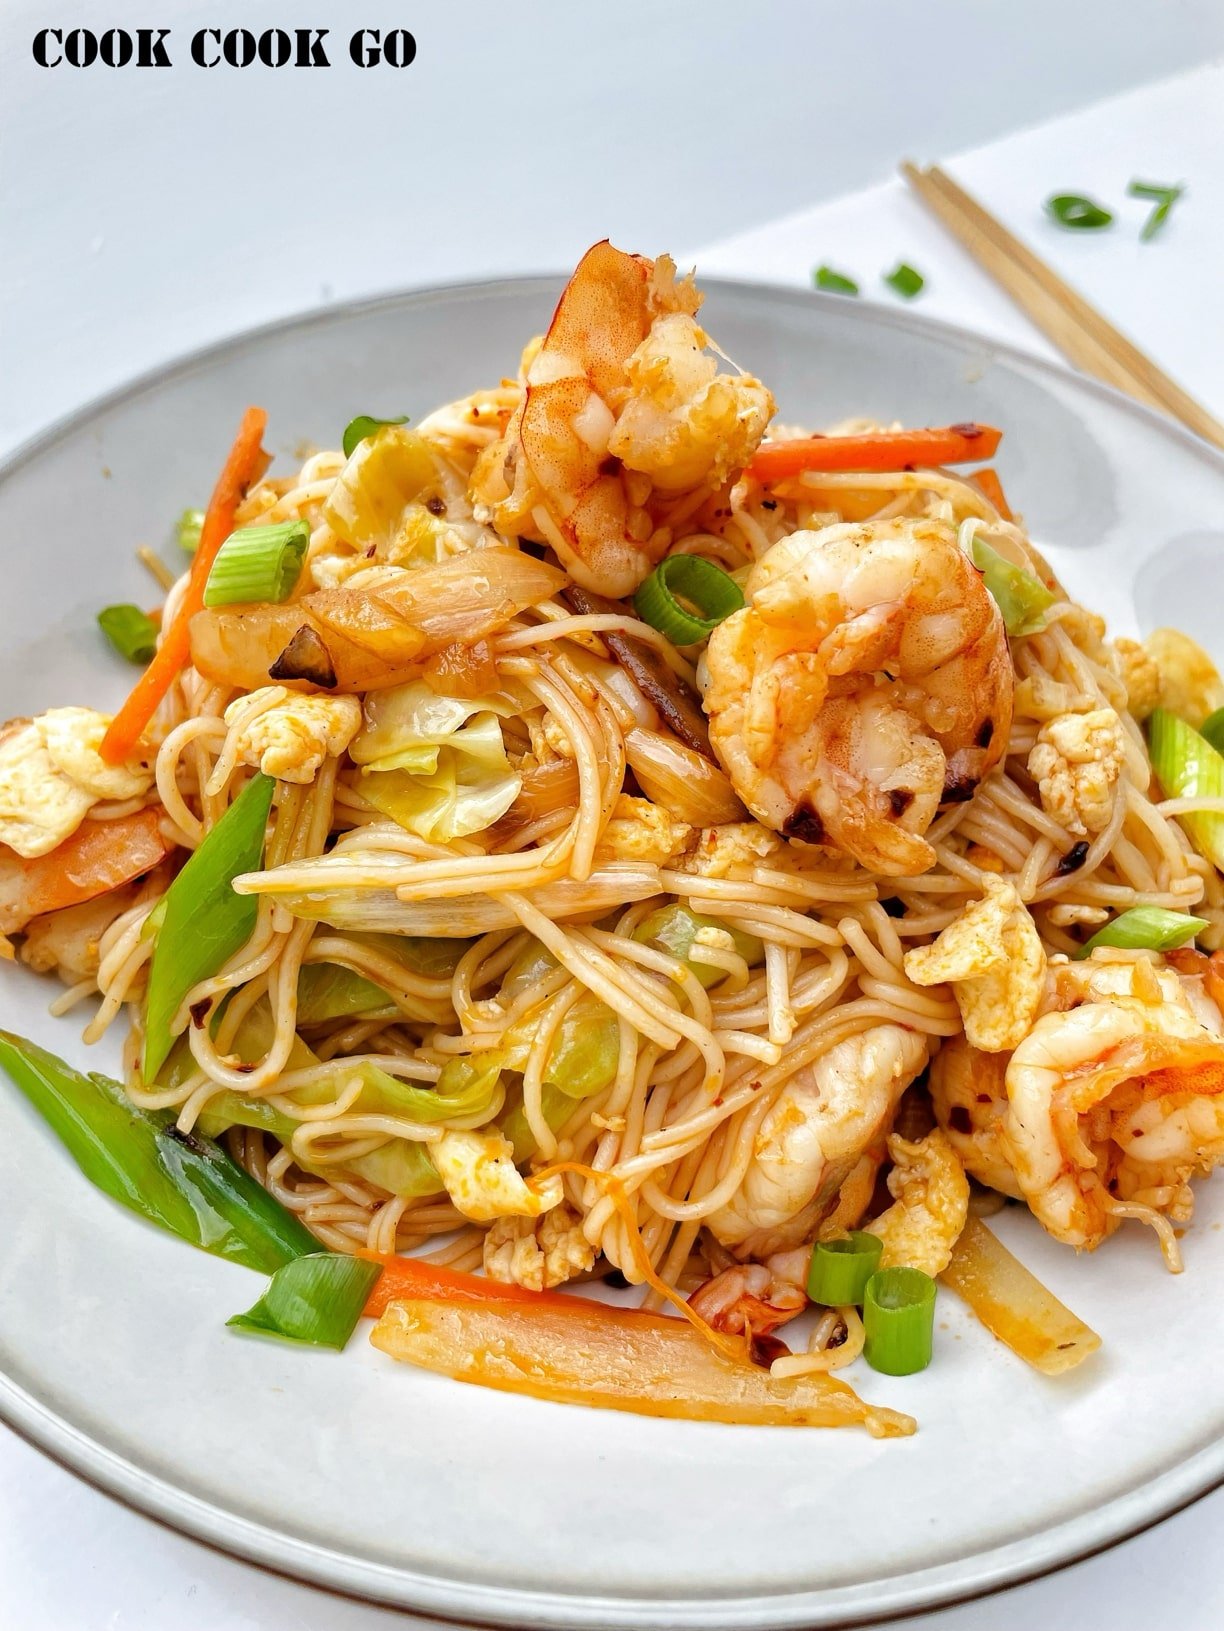 spicy shrimp stir-fry rice noodles